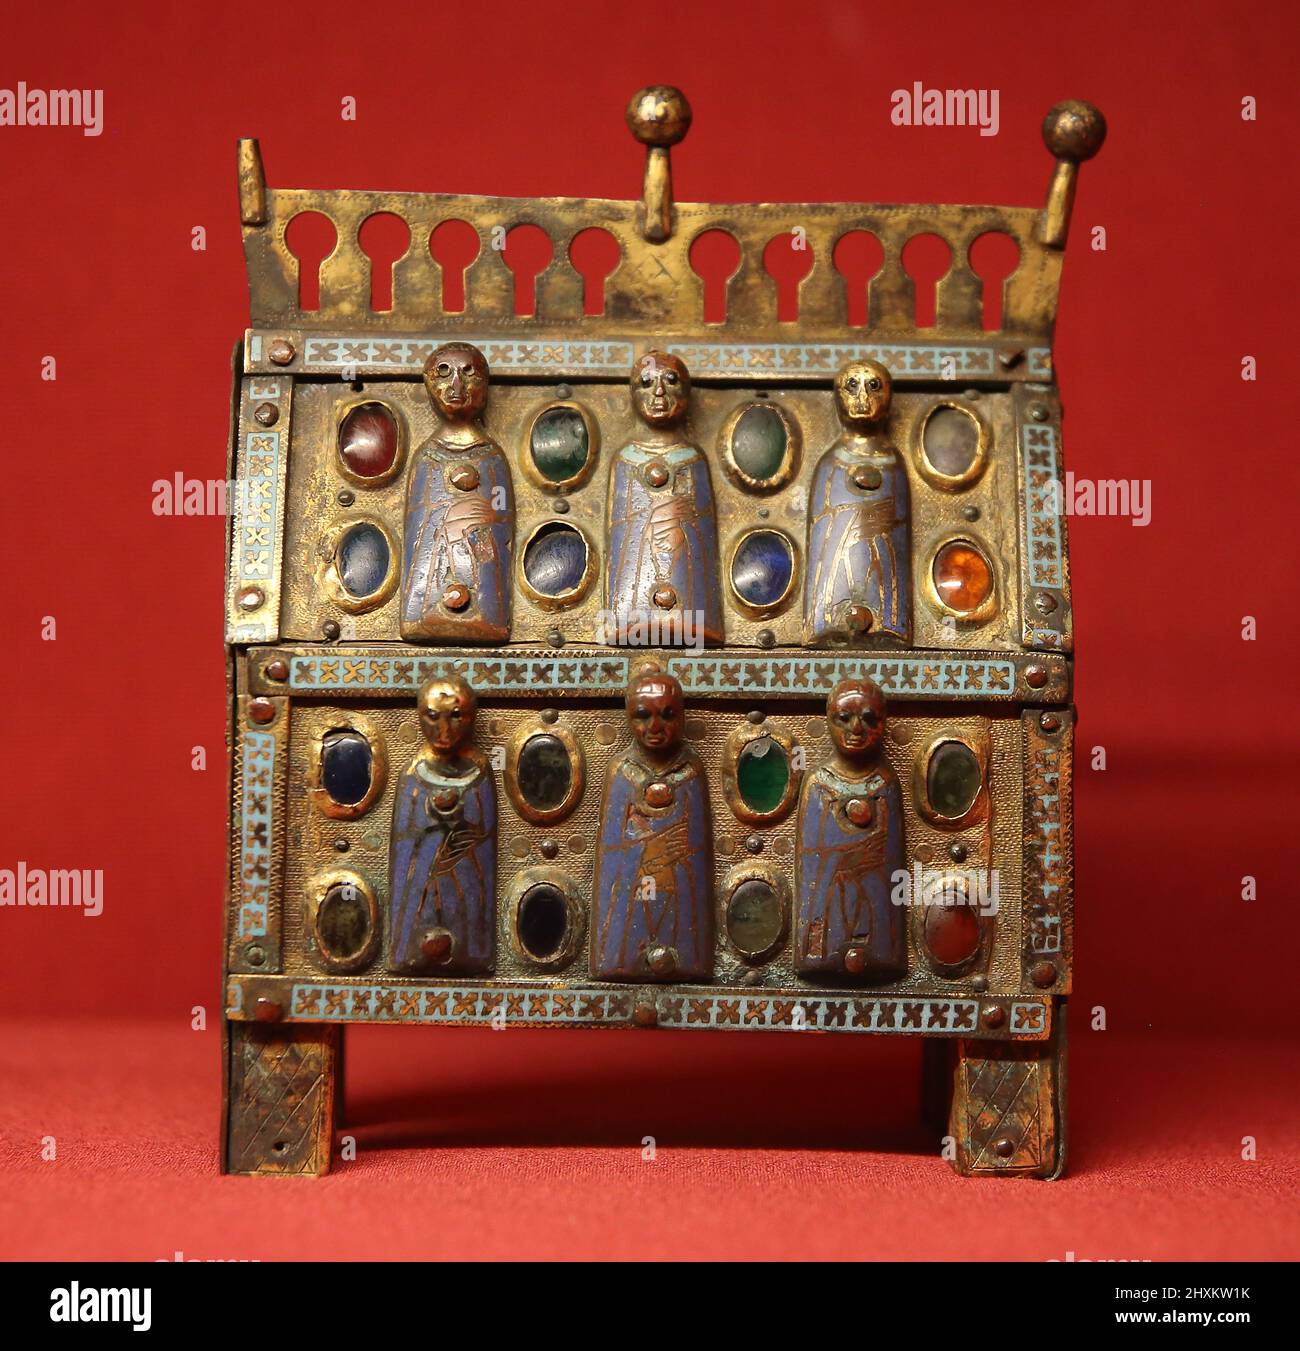 Chasse oder Box Reliquiar. Figuren emailliert und Edelsteine. Limoges. Frankreich. 13. Jahrhundert. Mares Museum. Barcelona. Spanien Stockfoto